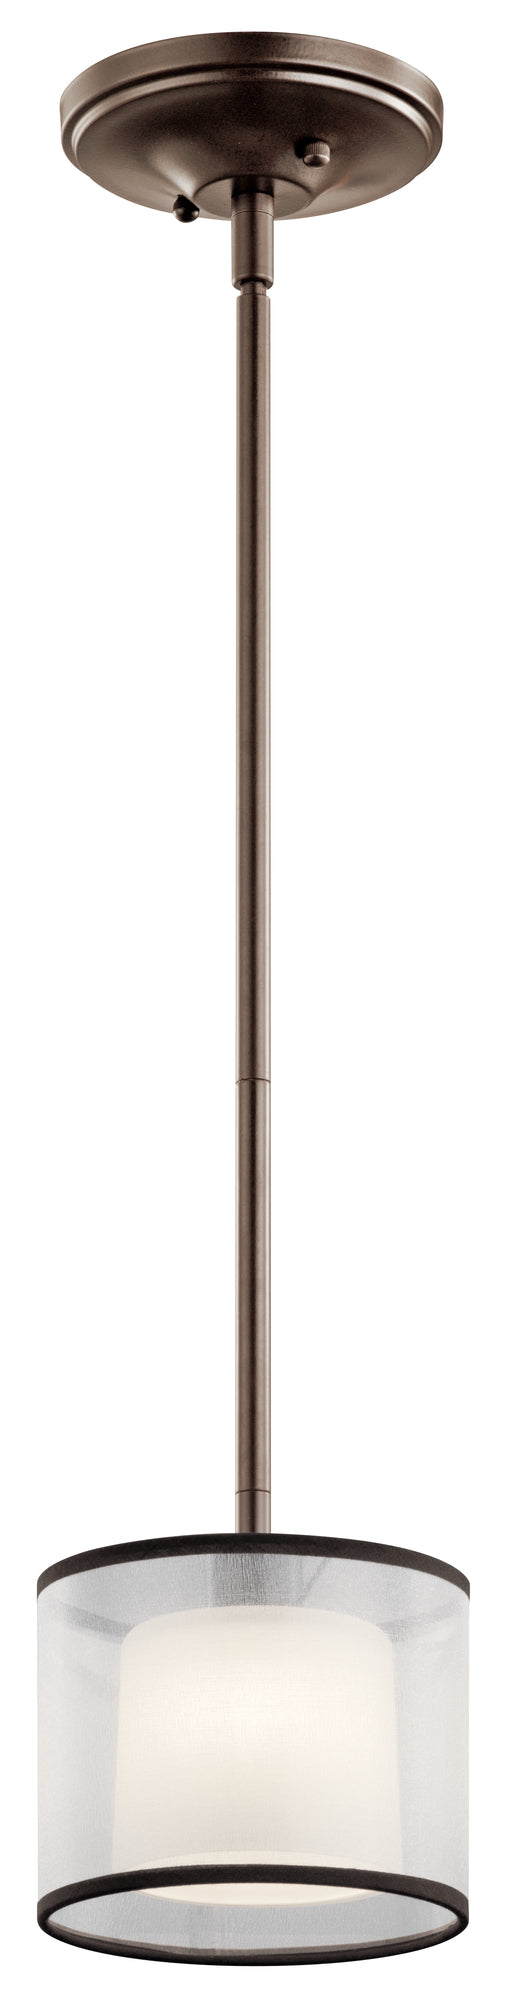 TALLIE Suspension simple Bronze - 43152MIZ | KICHLER